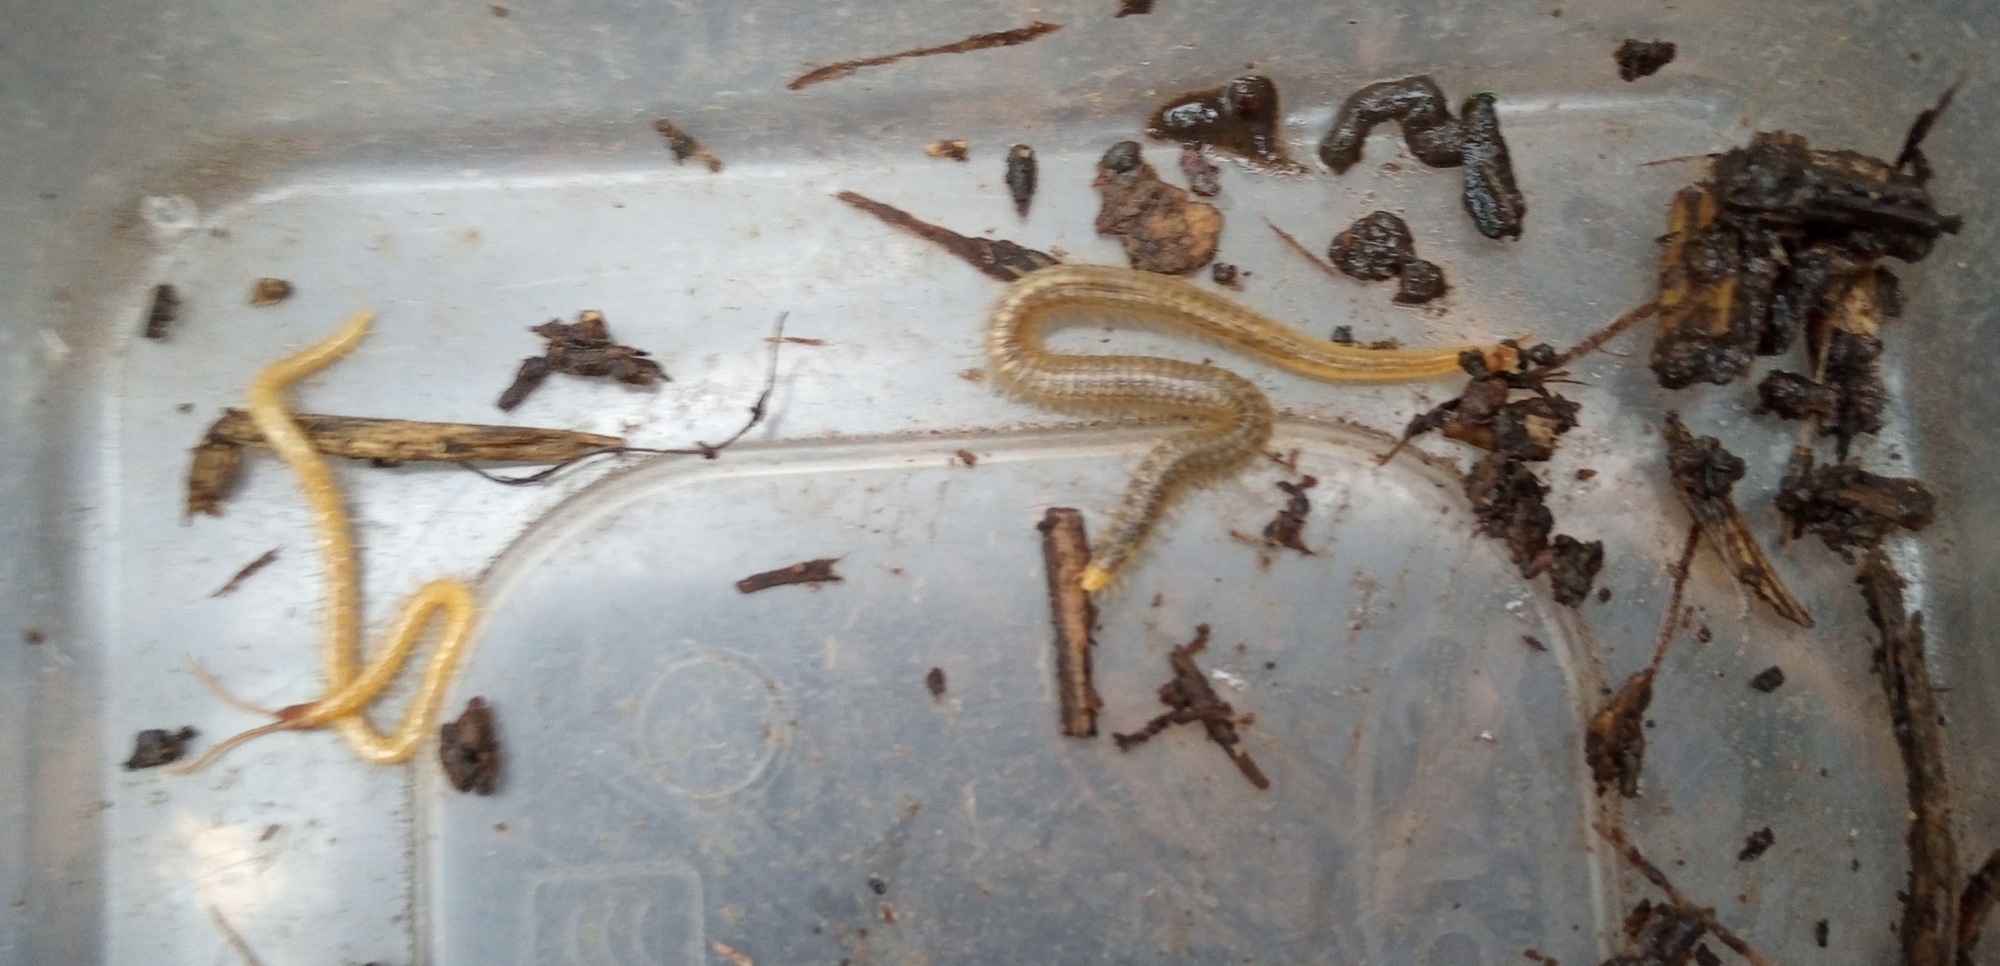 Centipede and Millipede 